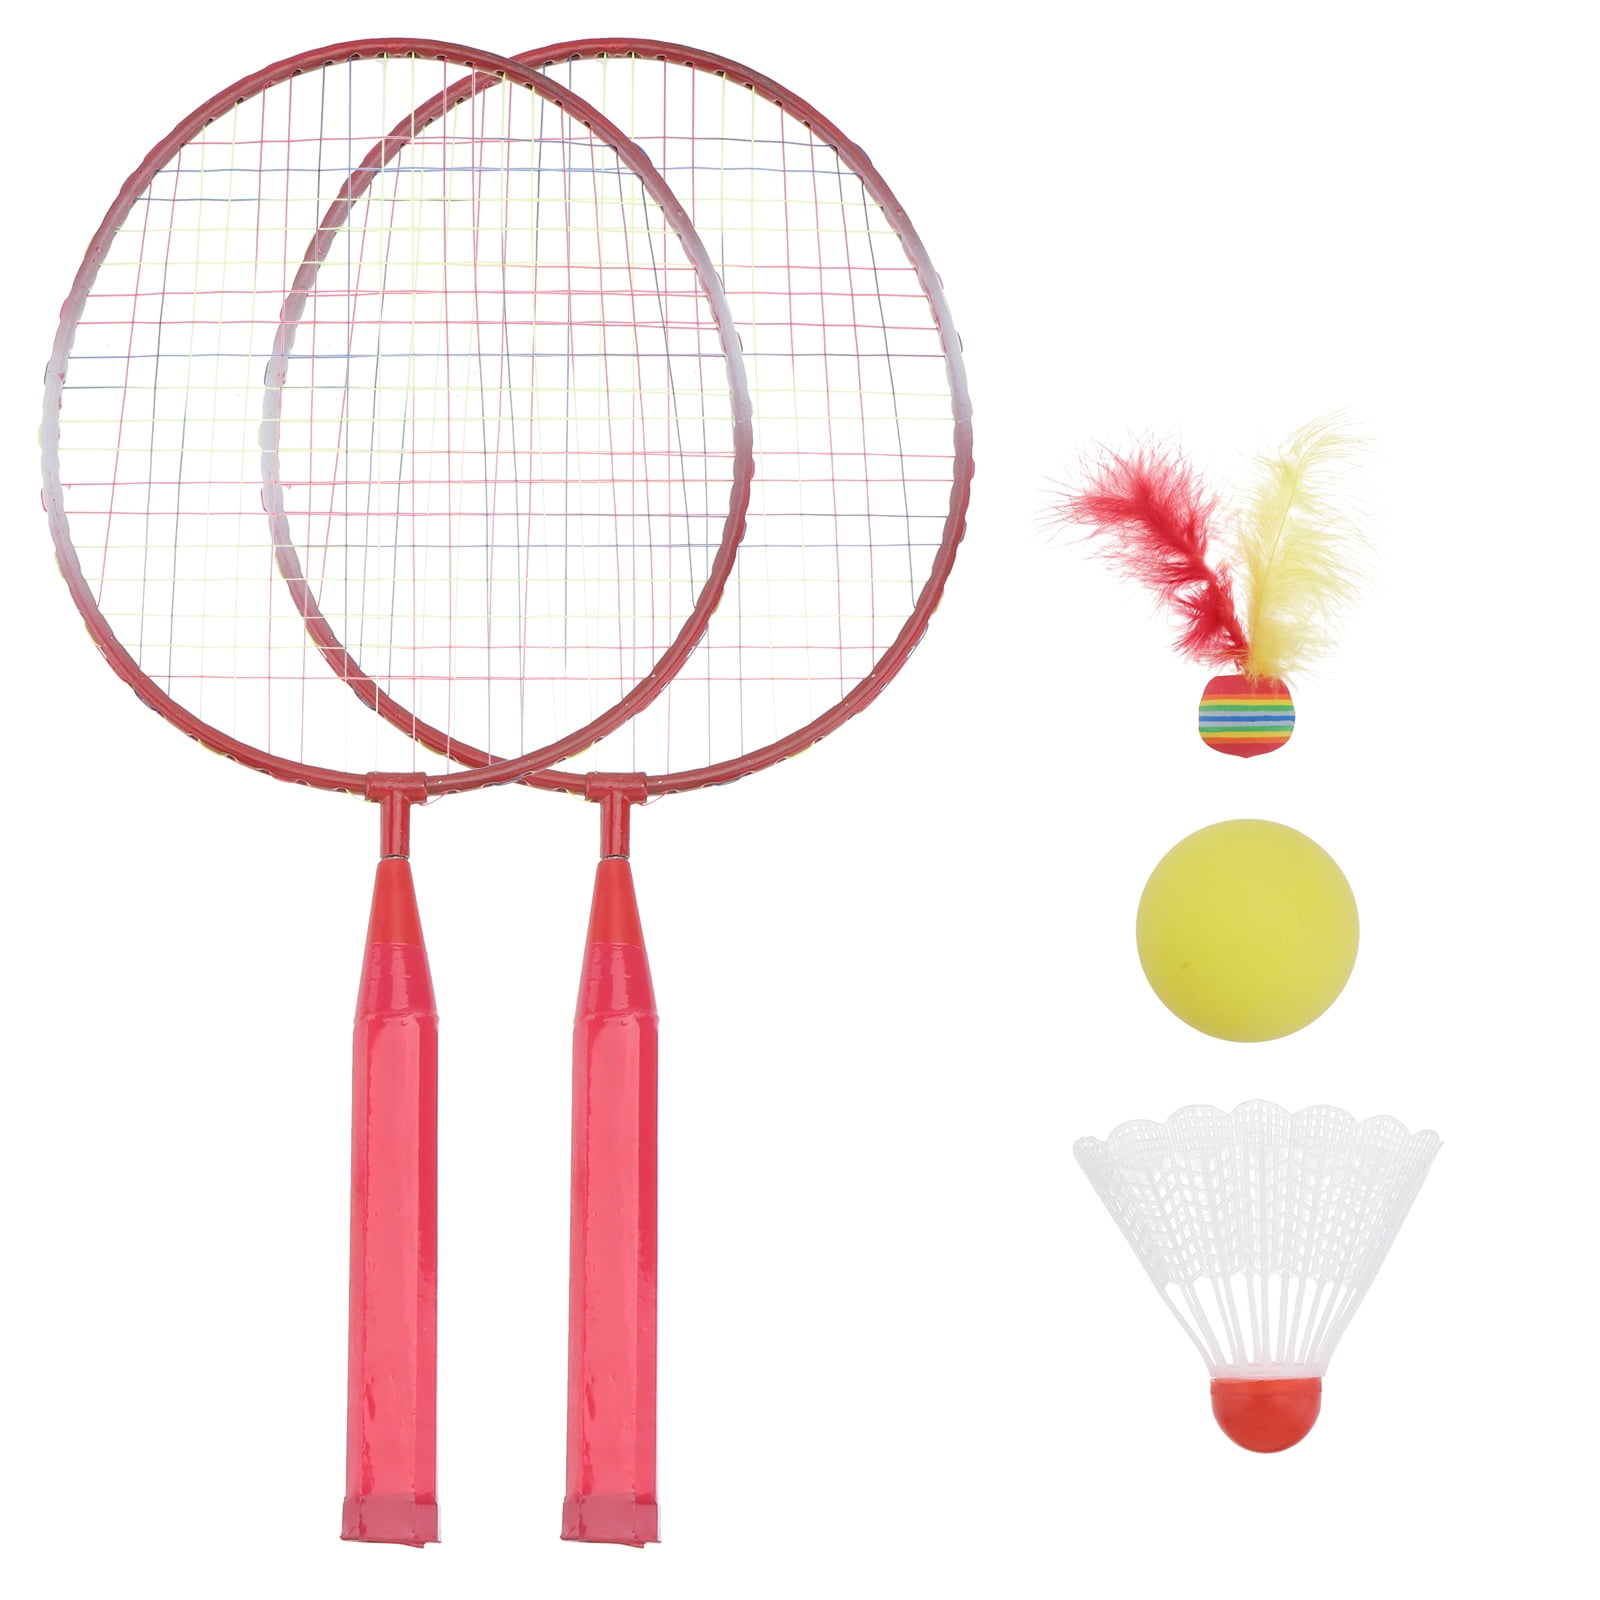 4-Player Adult/Teenager Badminton Racket With Net Outdoor Set 